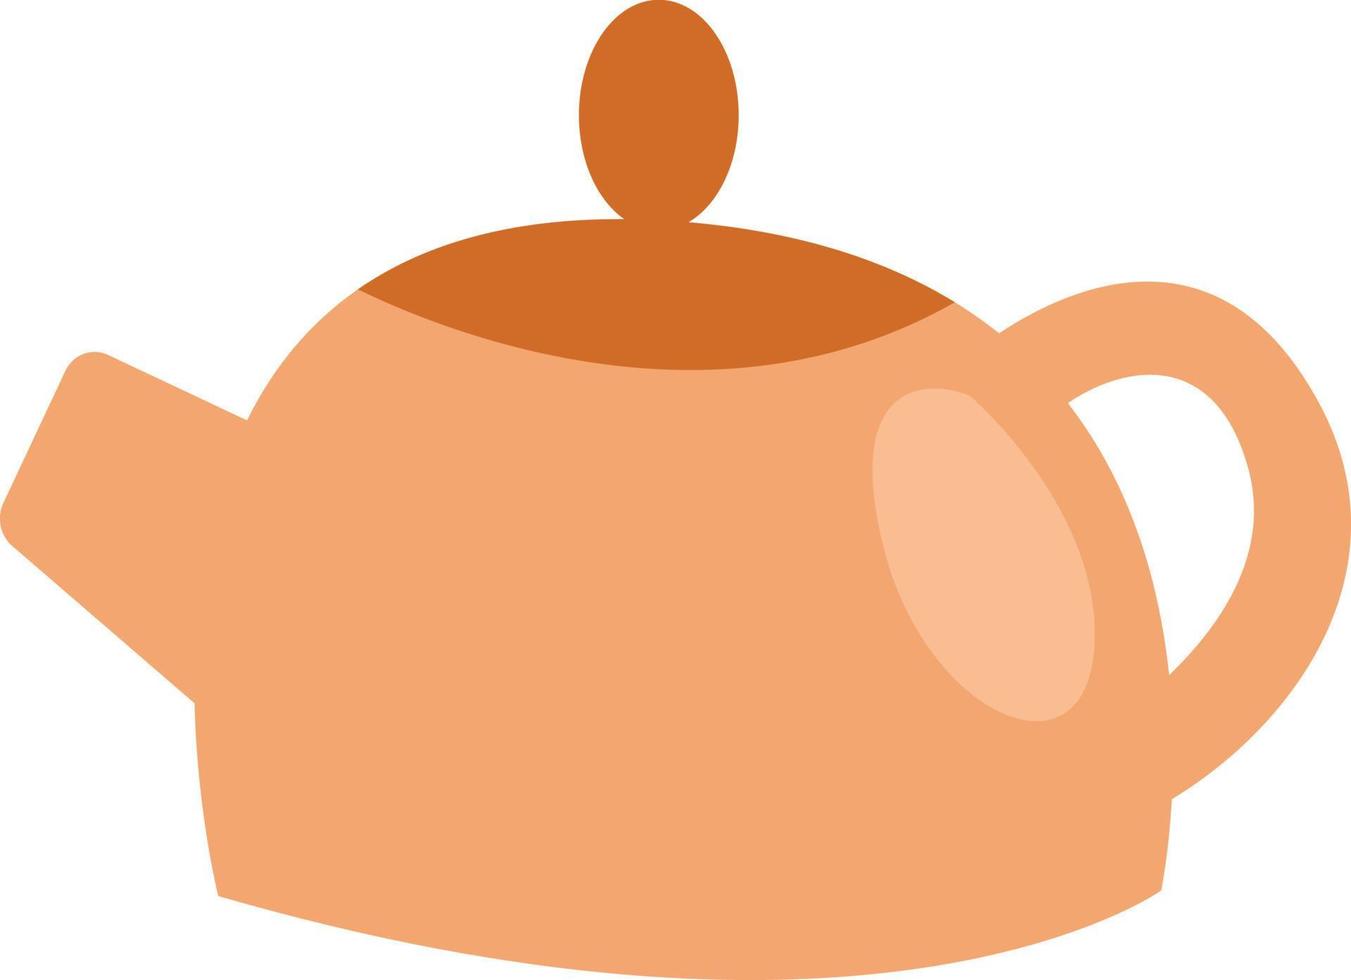 Restaurant teapot, illustration, vector on a white background.